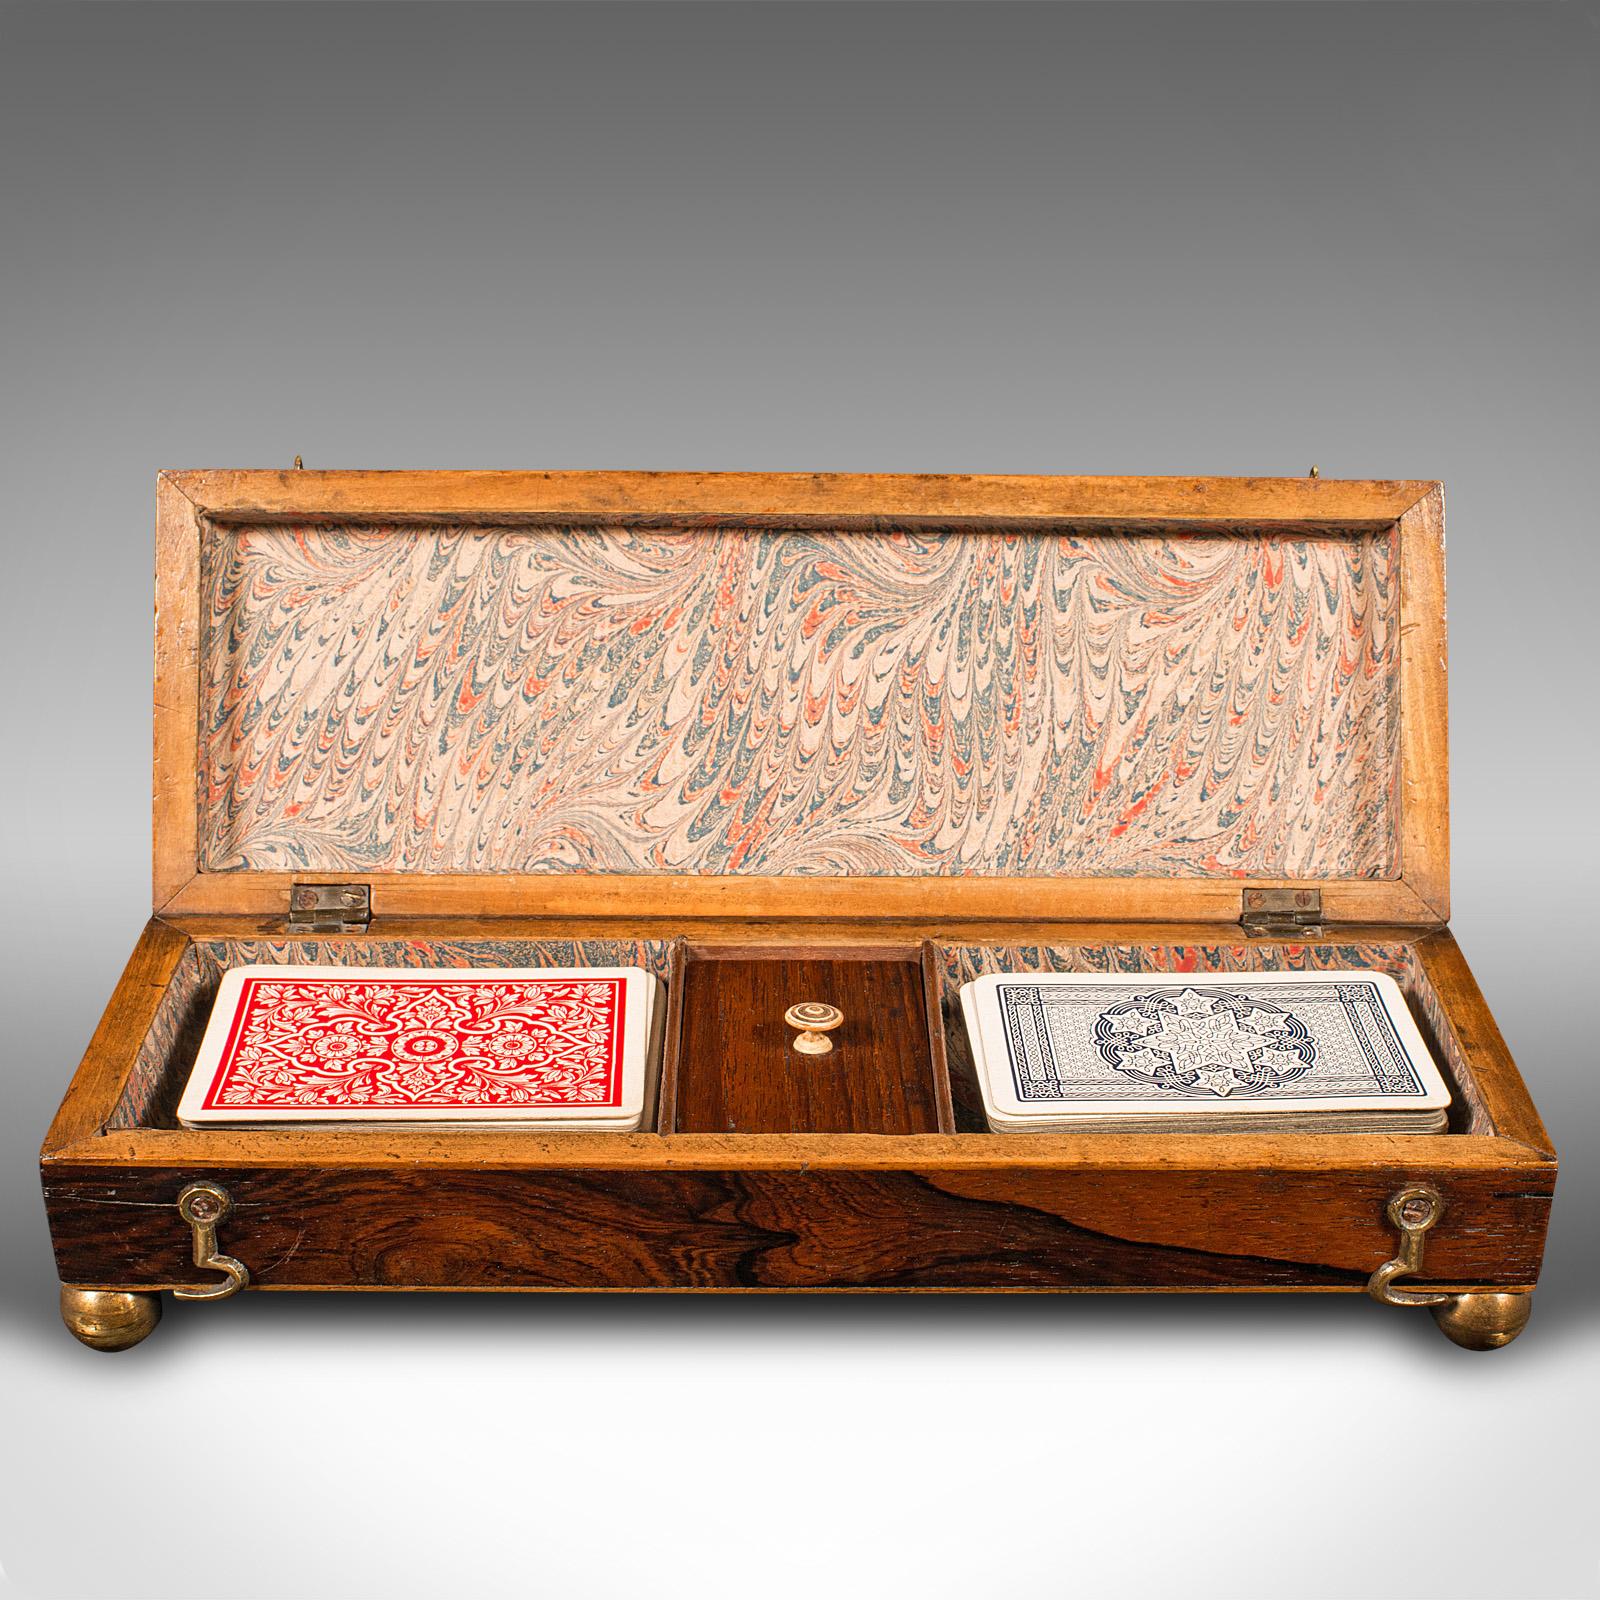 British Antique Gentleman's Cribbage Case, English, Brass, Card Game Box, Mid Victorian